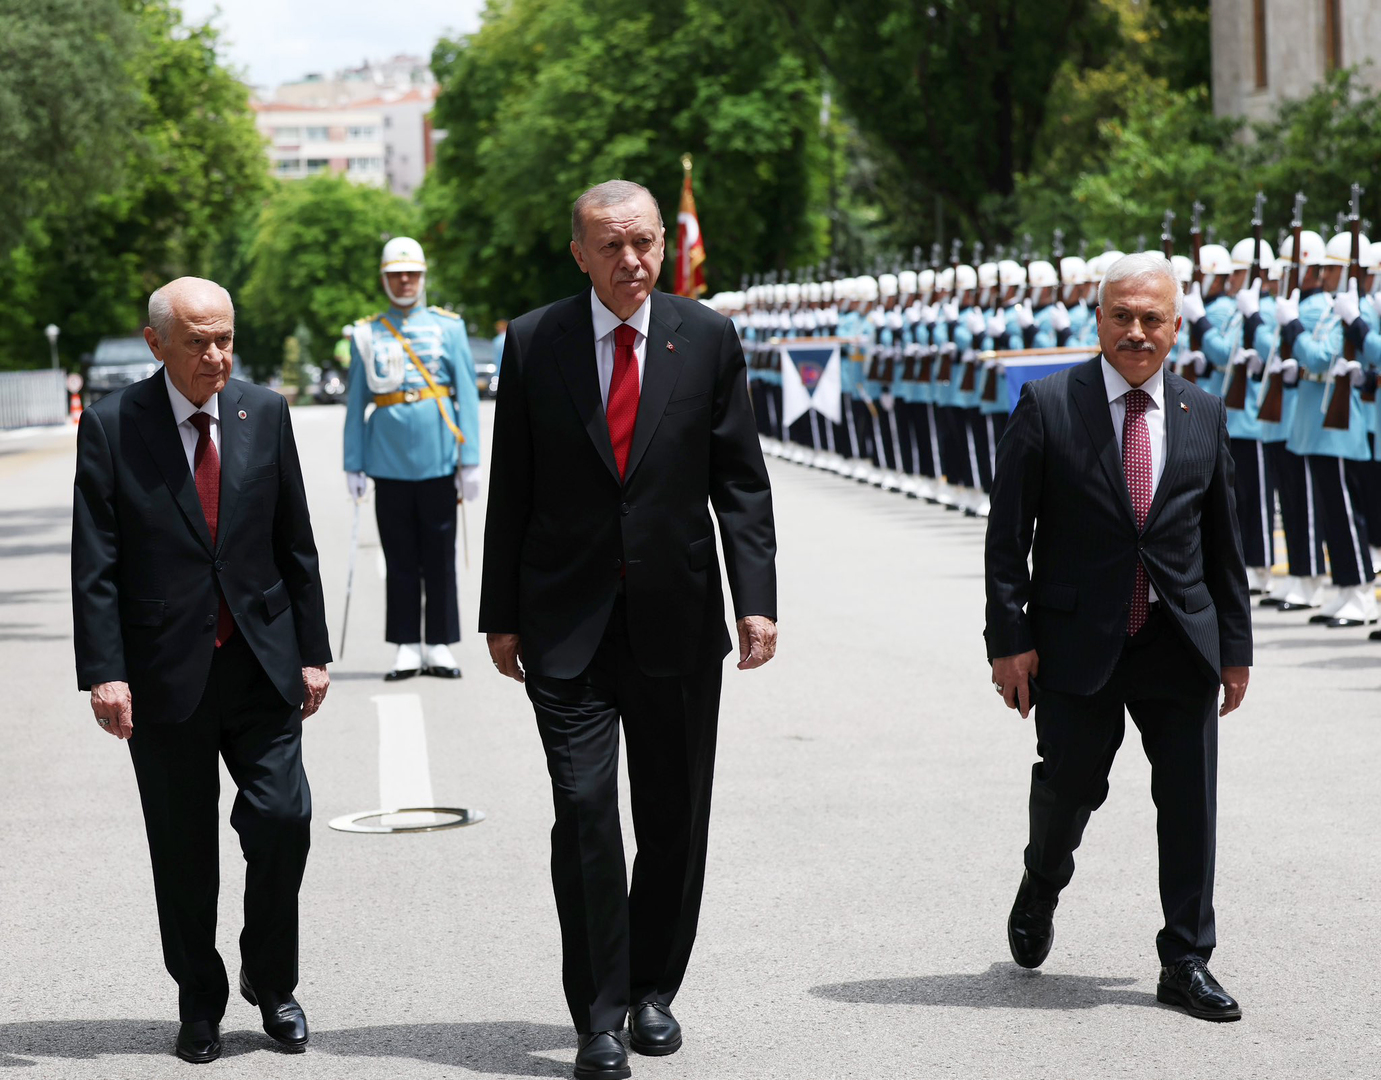 أردوغان يؤدي اليمين الدستورية تحت قبة البرلمان التركي إيذانا ببدء ولايته الرئاسية الجديدة